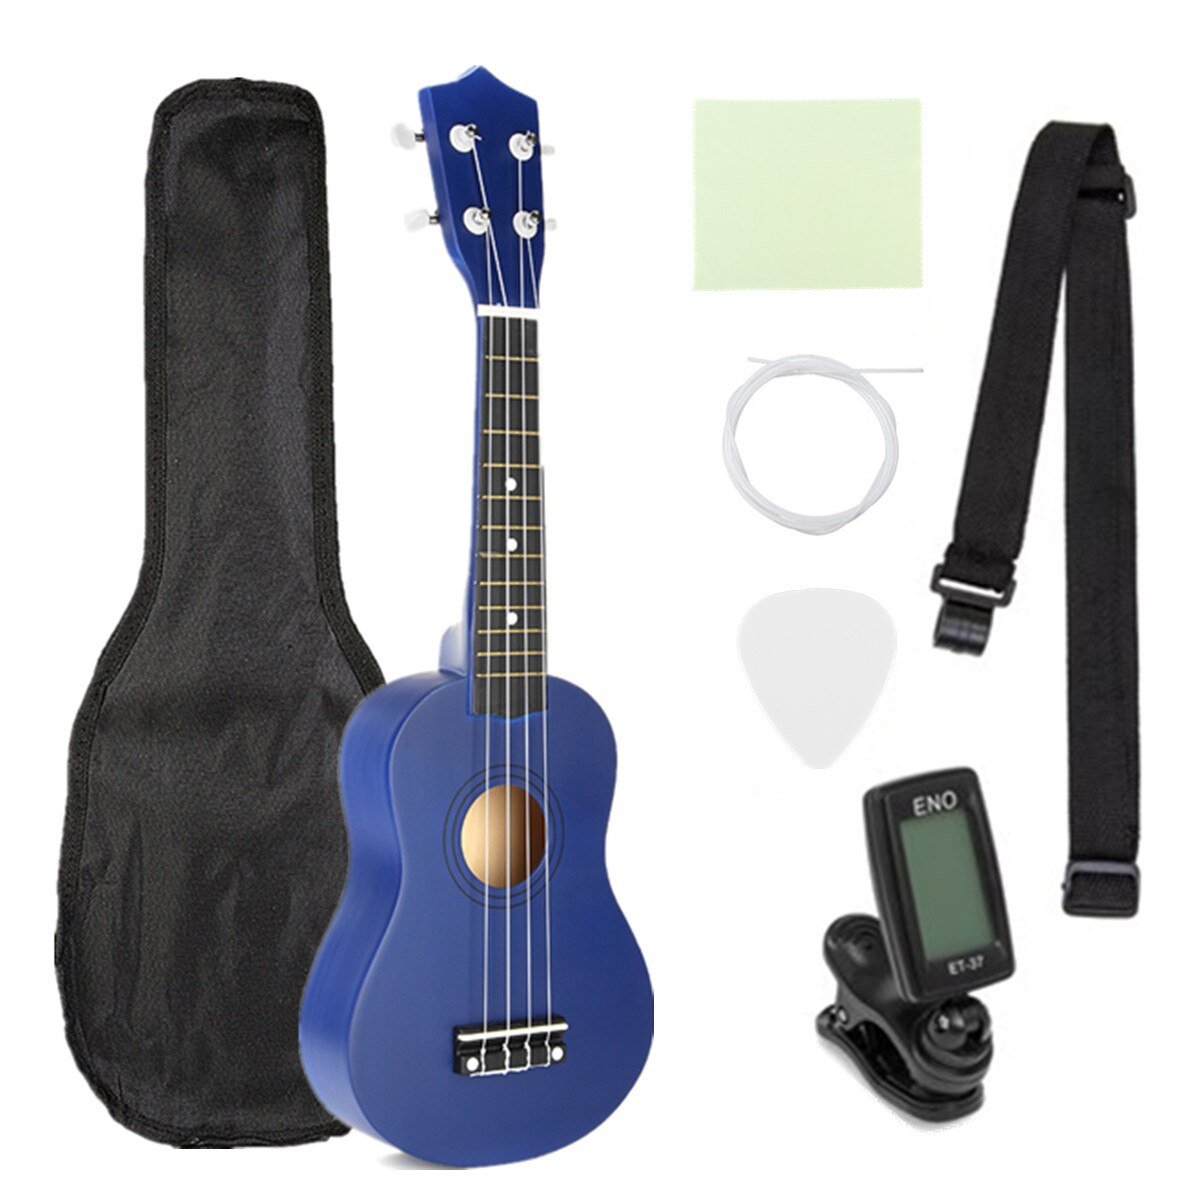 Ukulele Combo 21 Ukulele Black Soprano 4 Strings Uke Hawaii Bass Stringed Musical Instrument Set Kits+Tuner+String+Strap+Bag - AKLOT